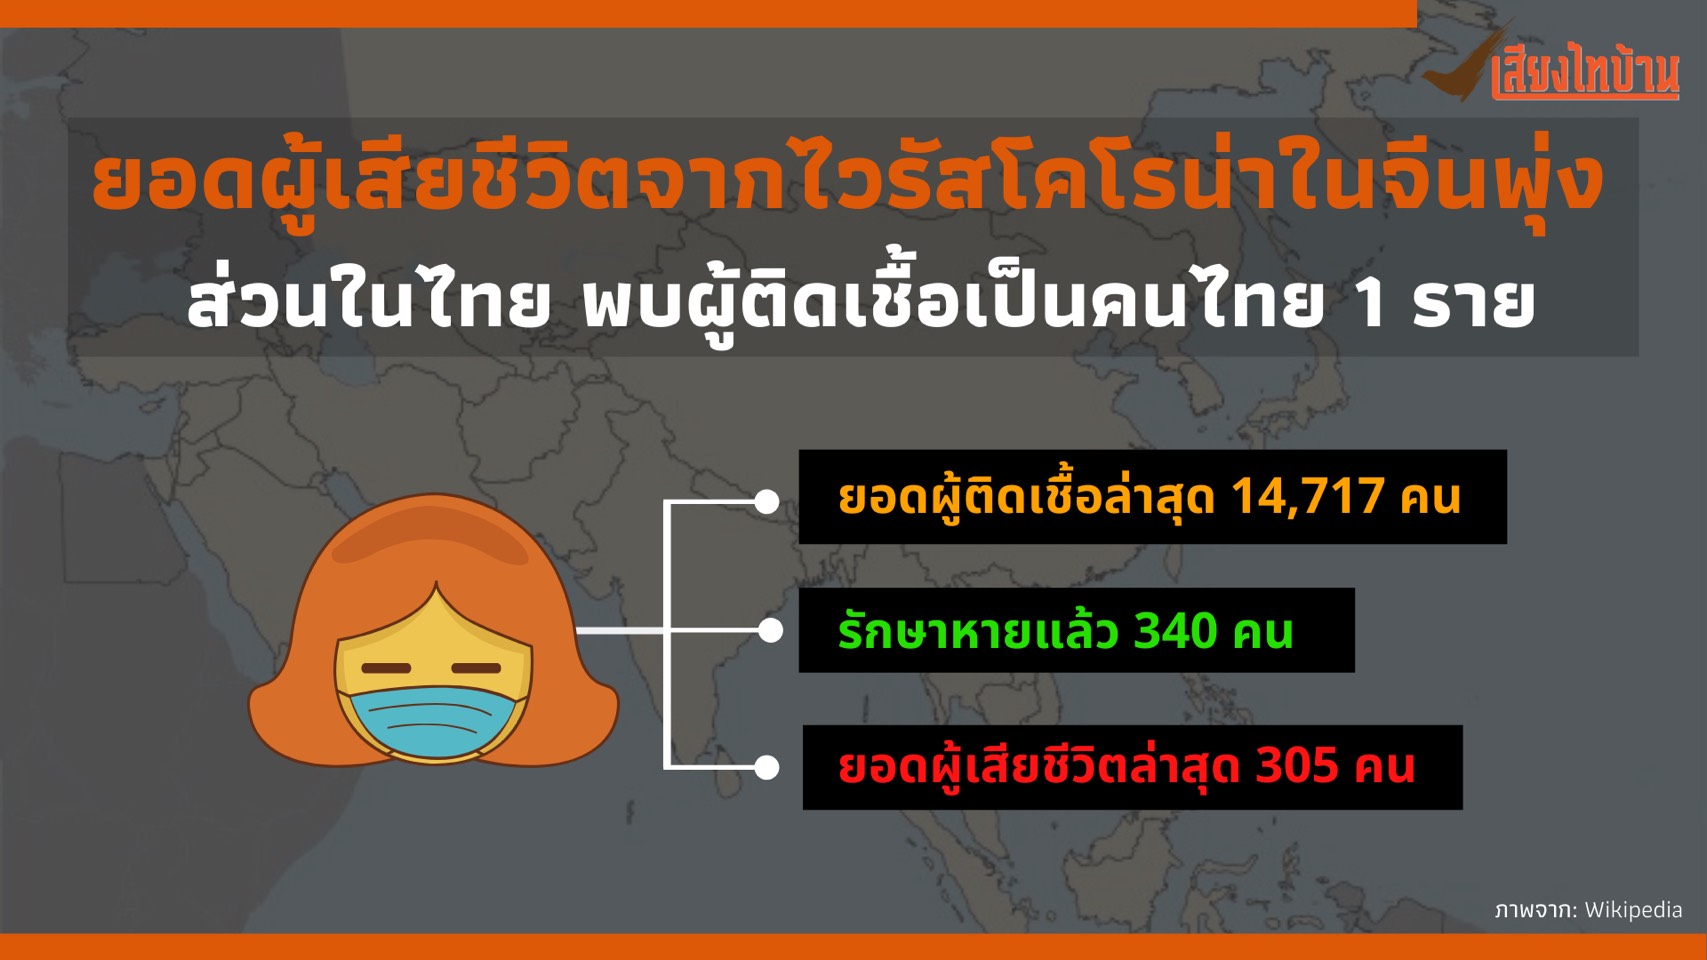 ยอดผู้เสียชีวิตจากไวรัสโคโรน่าในจีนพุ่ง ส่วนในไทย พบผู้ติดเชื้อเป็นคนไทย 1 ราย